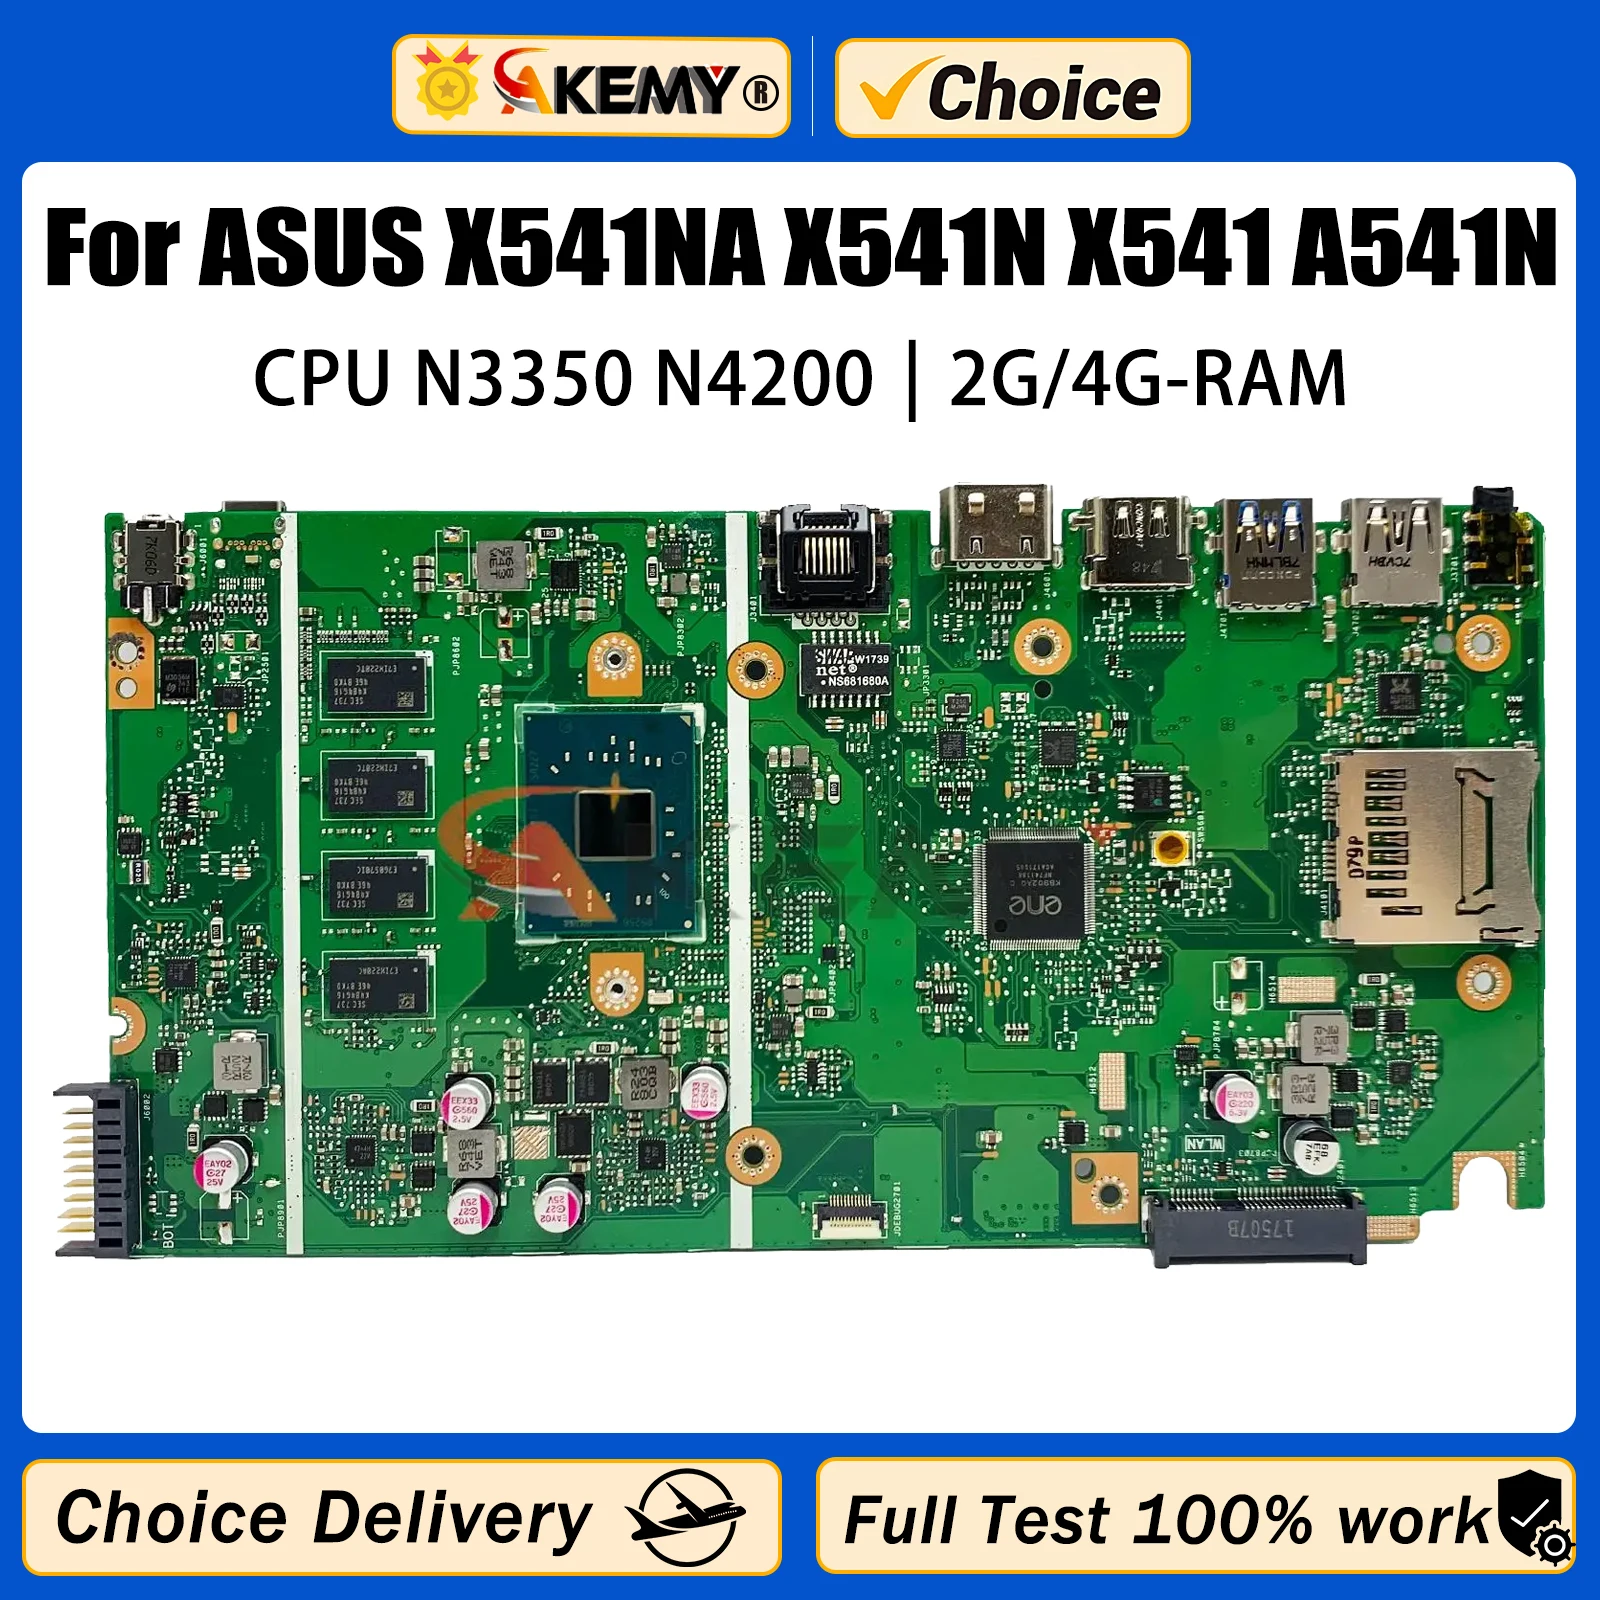 

AKEMY X541NA Mainboard For ASUS VivoBook X541N X541 A541N Laptop Motherboard 2GB 4GB RAM N3350 N3450 N4200 CPU Notebook Mainboar